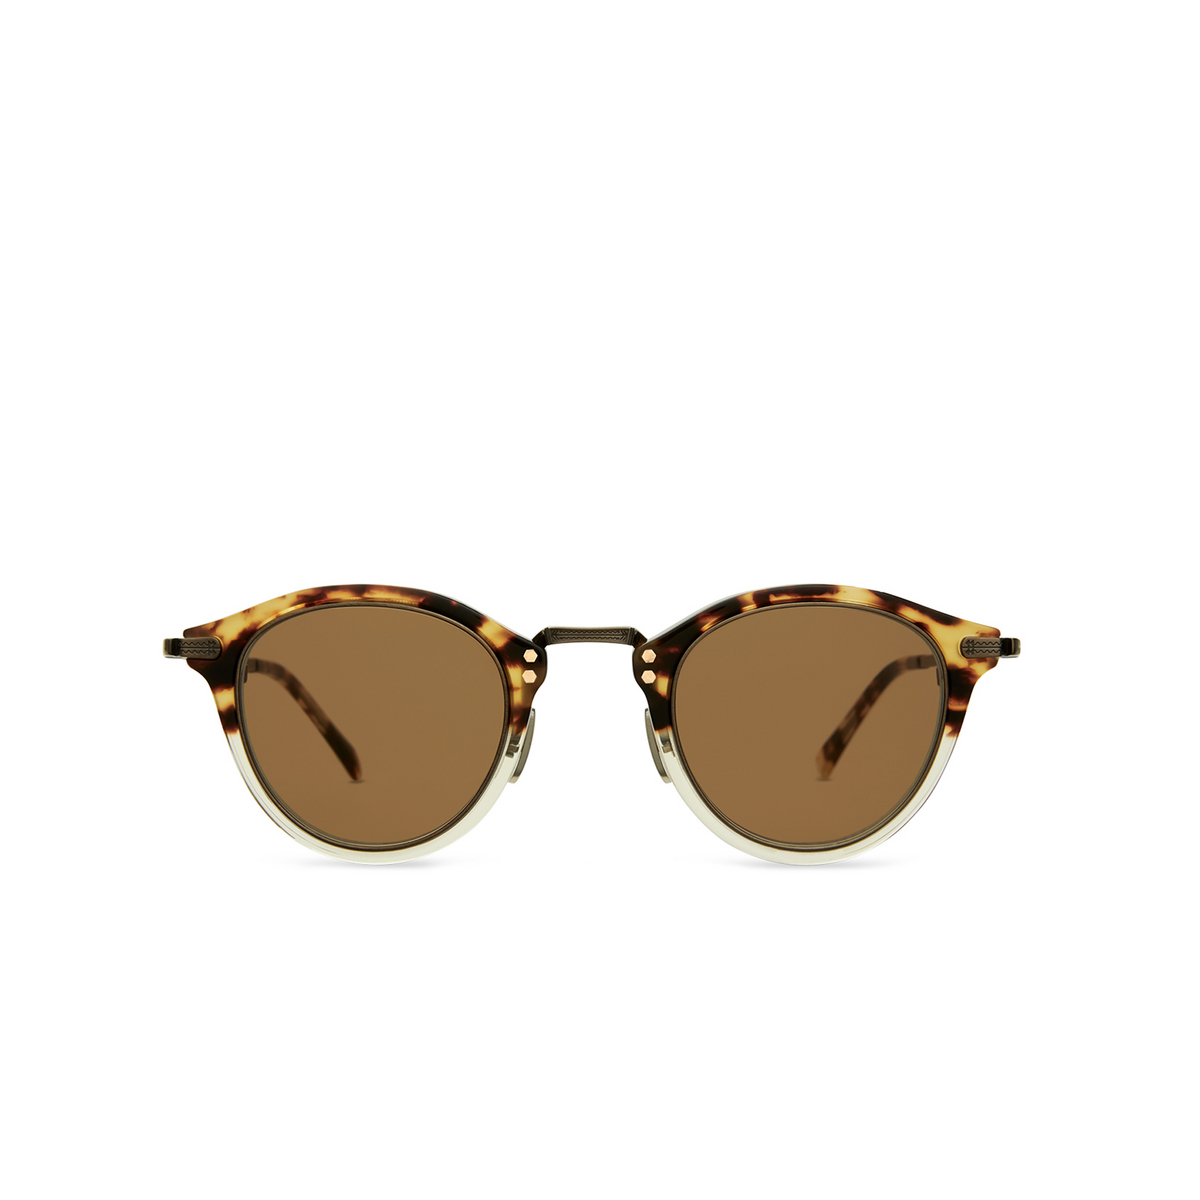 Mr. Leight STANLEY S Sunglasses DTORT-ATG-TRT/BRN Demi Tortoise-Antique Gold-Tortoise - front view